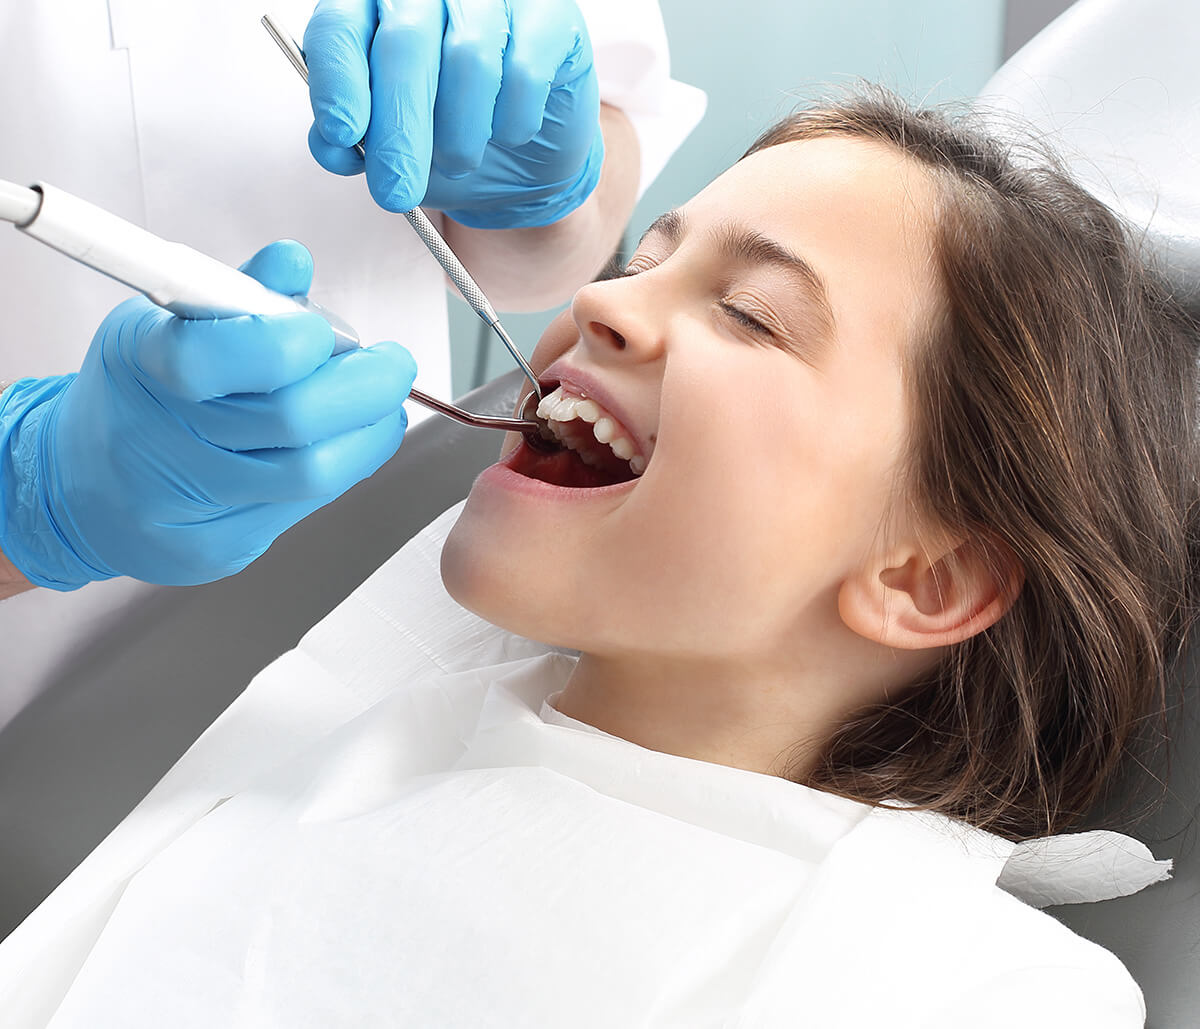 Kids Dental Cleanings Benefit